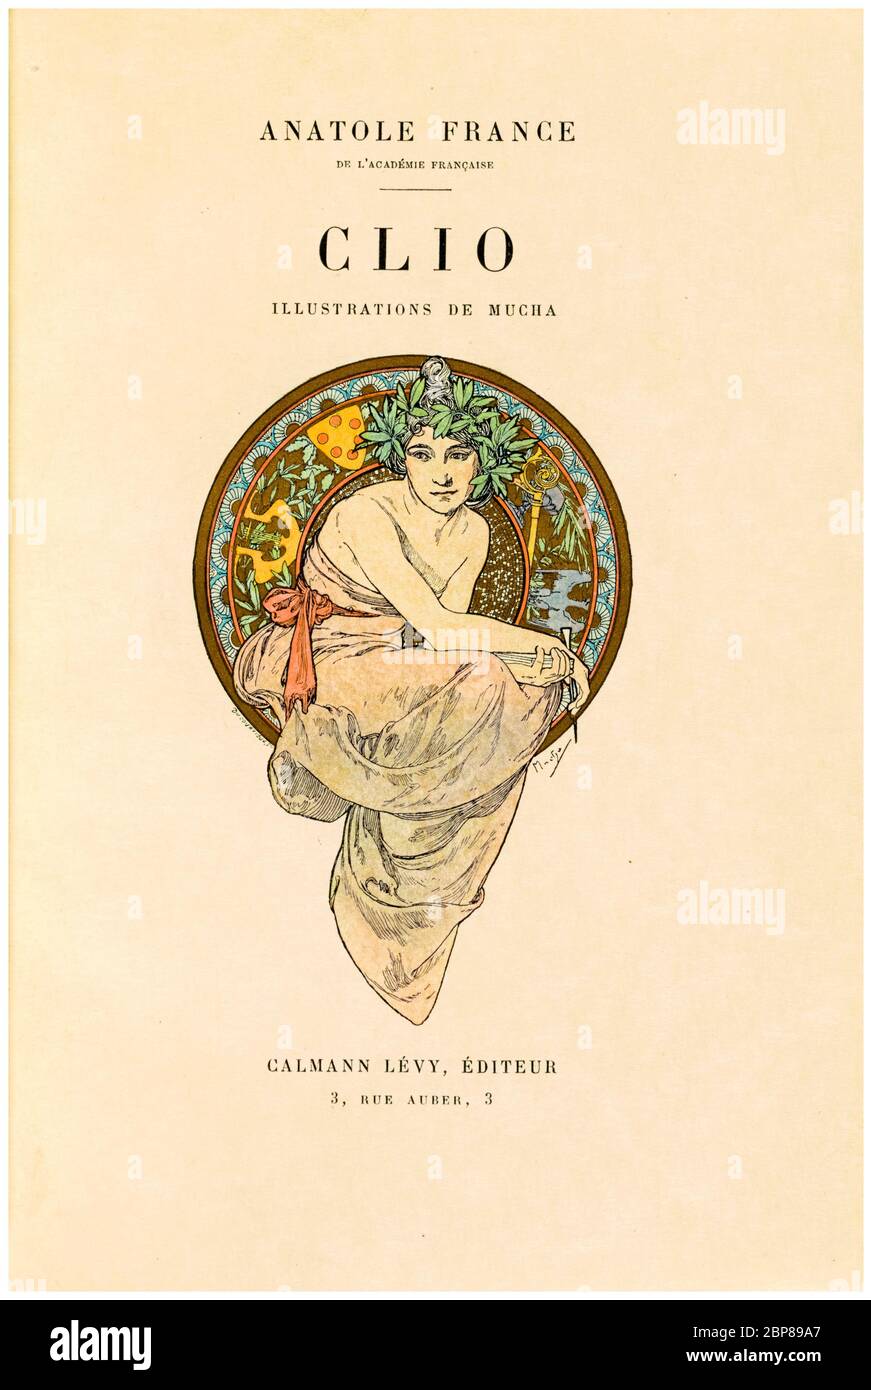 Alphonse Mucha, Anatole France (auteur), Clio, frontispice, Art Nouveau, illustration, 1900 Banque D'Images